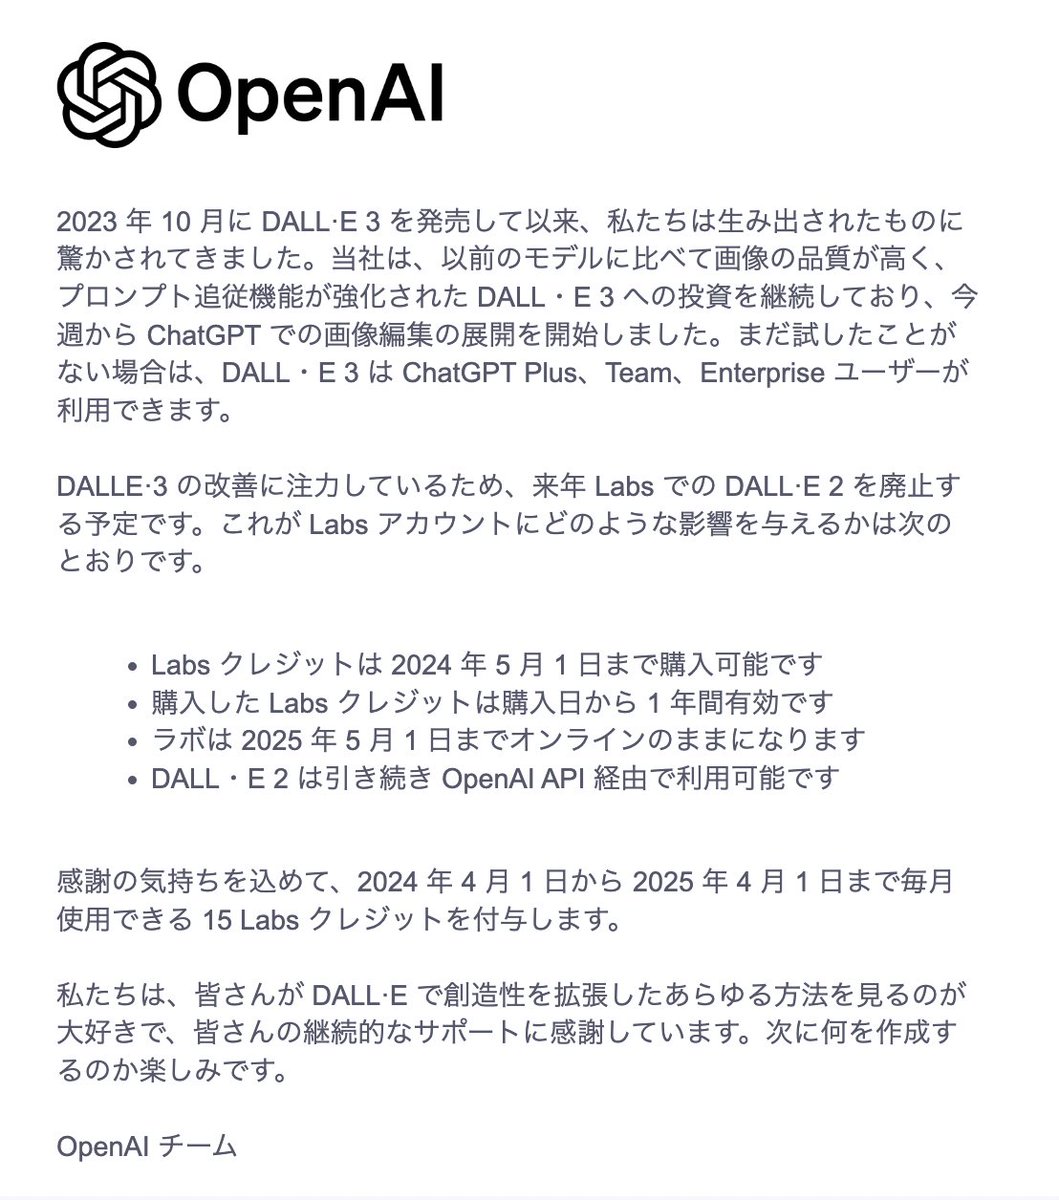 OpenAIから通知が来てますね。Dalle2を廃止するようで、同時にDalle３がアップデートされるのかな？期待したい♬